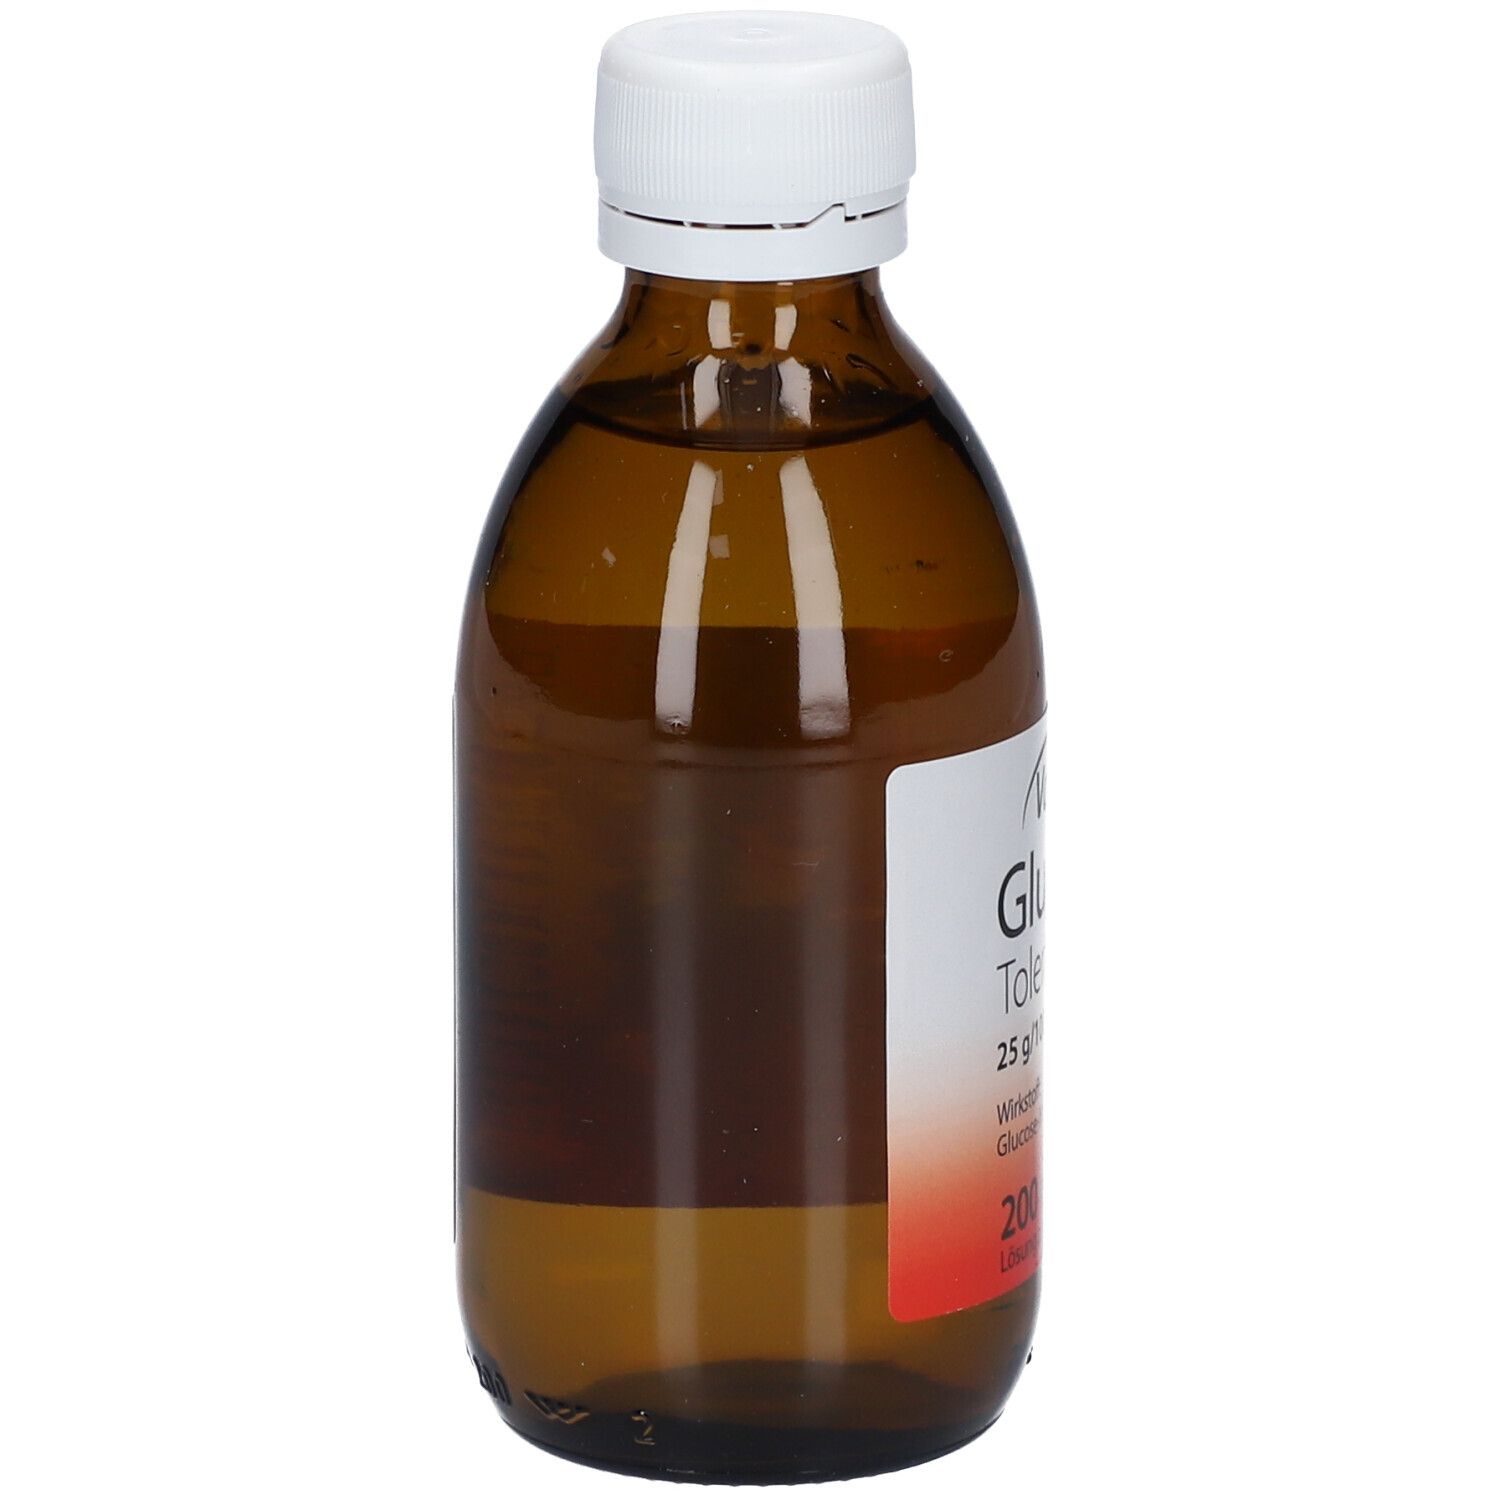 Valena Glucose Toleranztest 25 g/100 ml